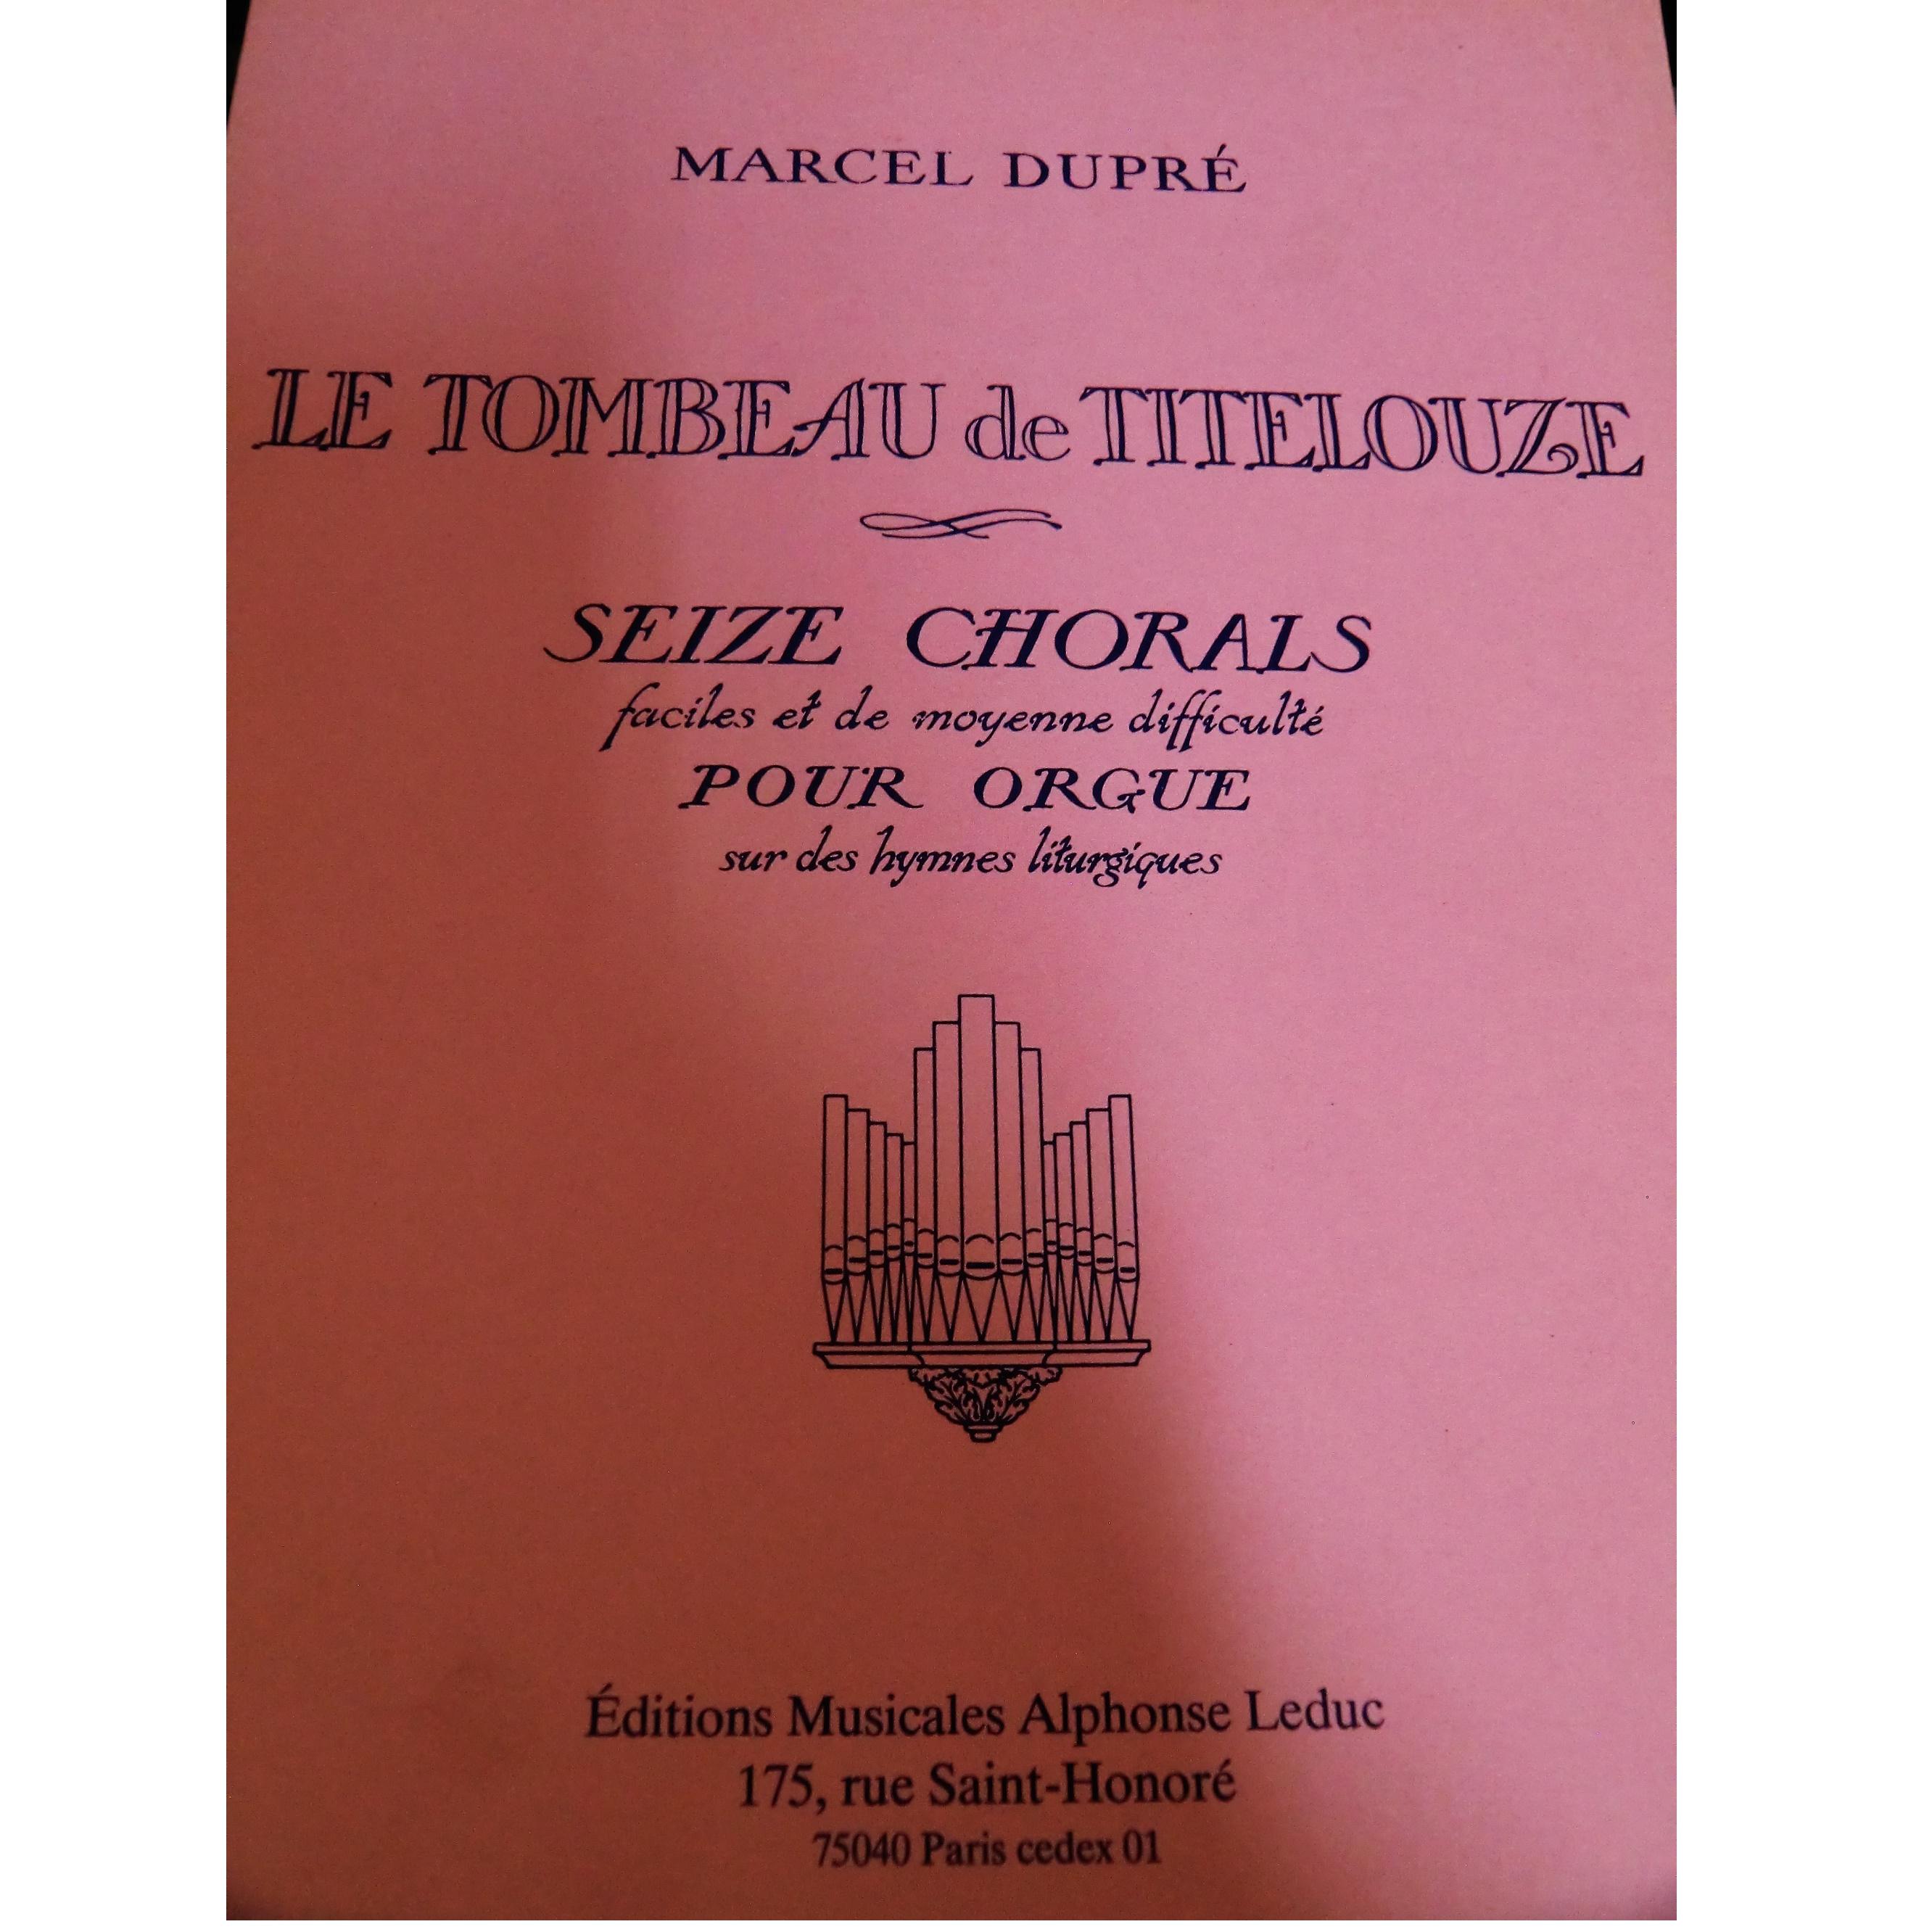 Dupre Le Tombeau De Titelouze Seize Chorals faciles et de moyenne difficulte pour orgue sur des hymmes liturgiques - Alphonse Ledùuc